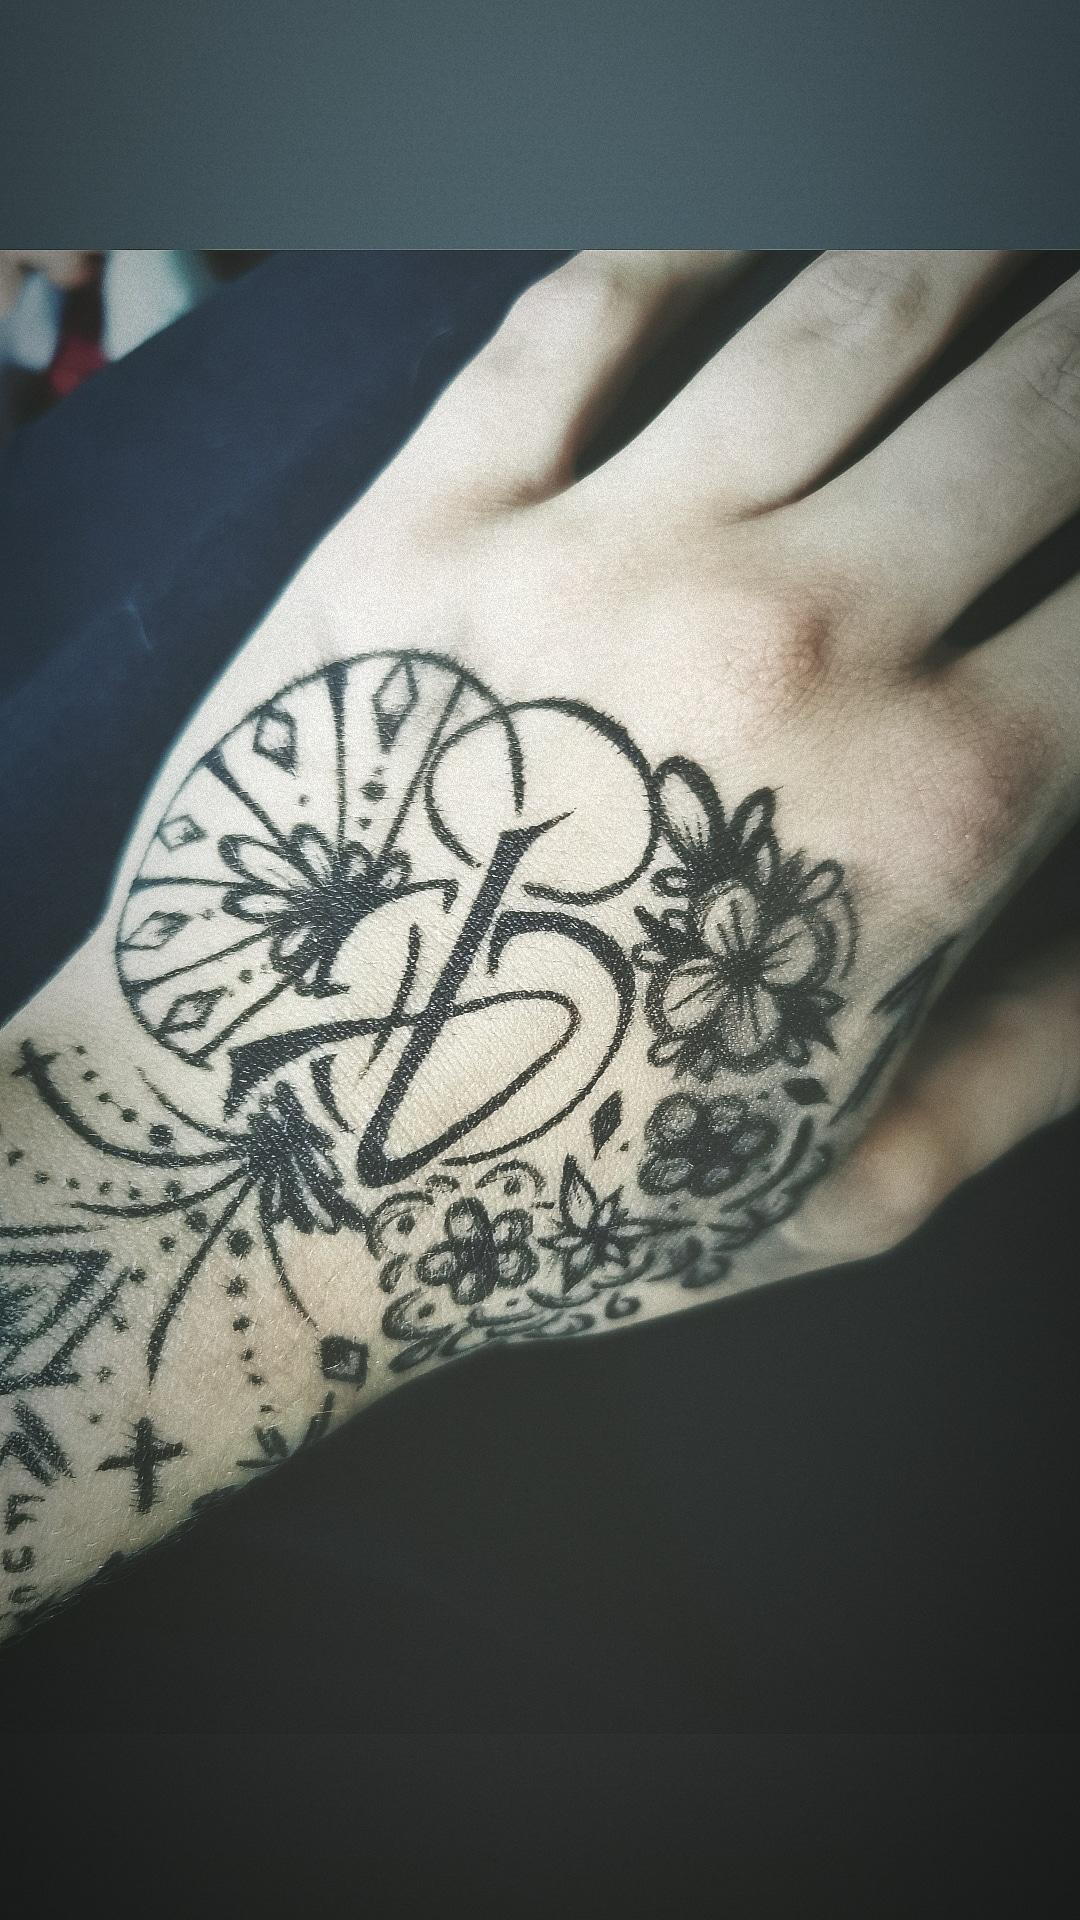 Inksearch tattoo Lolita